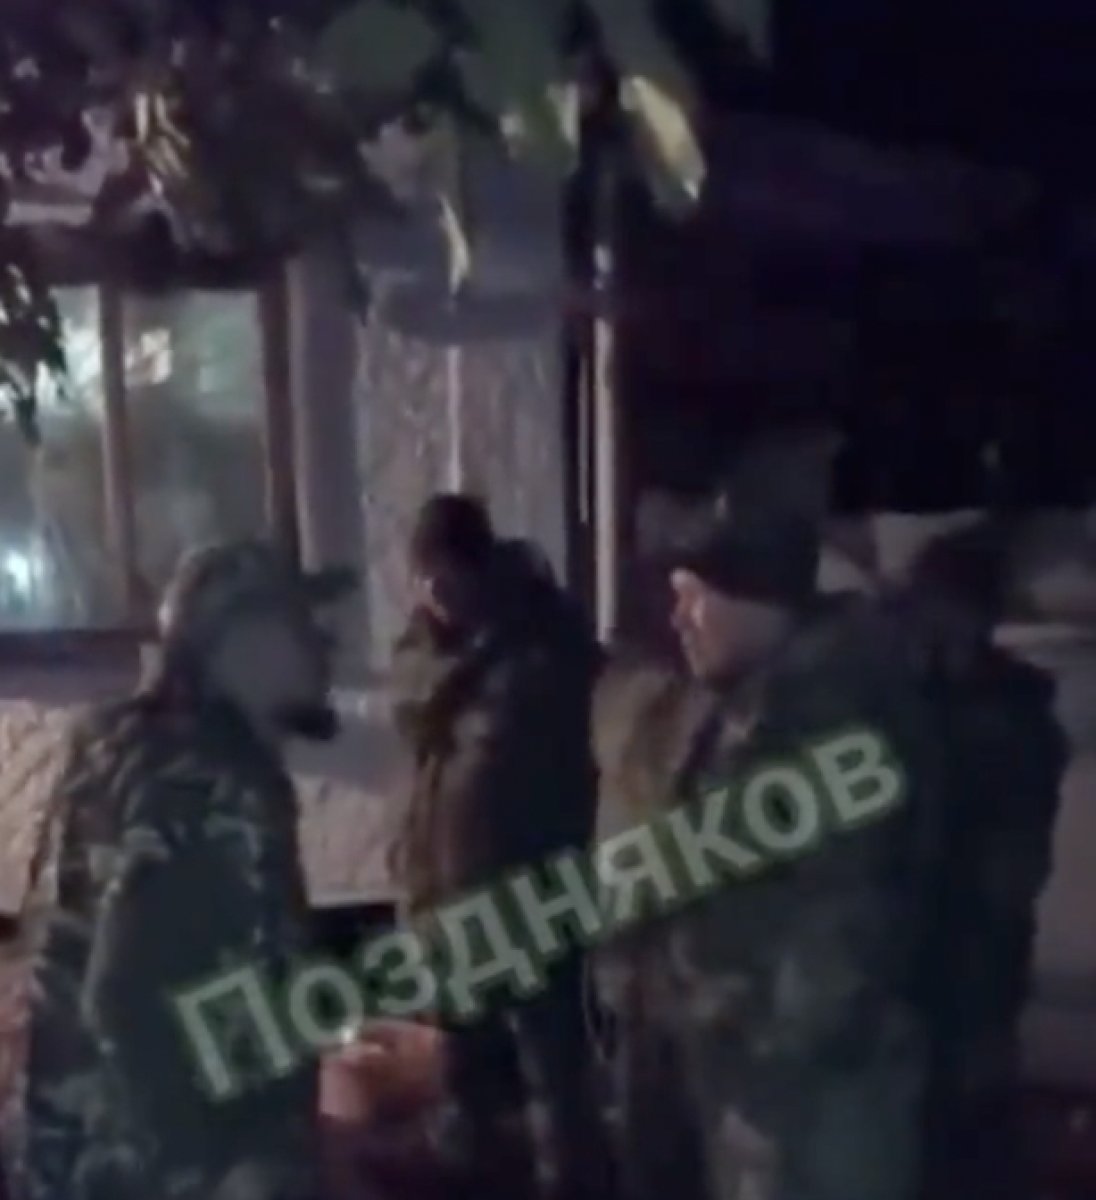 Mevziyi terk eden Rus askerlere komutandan sopalı dayak #1